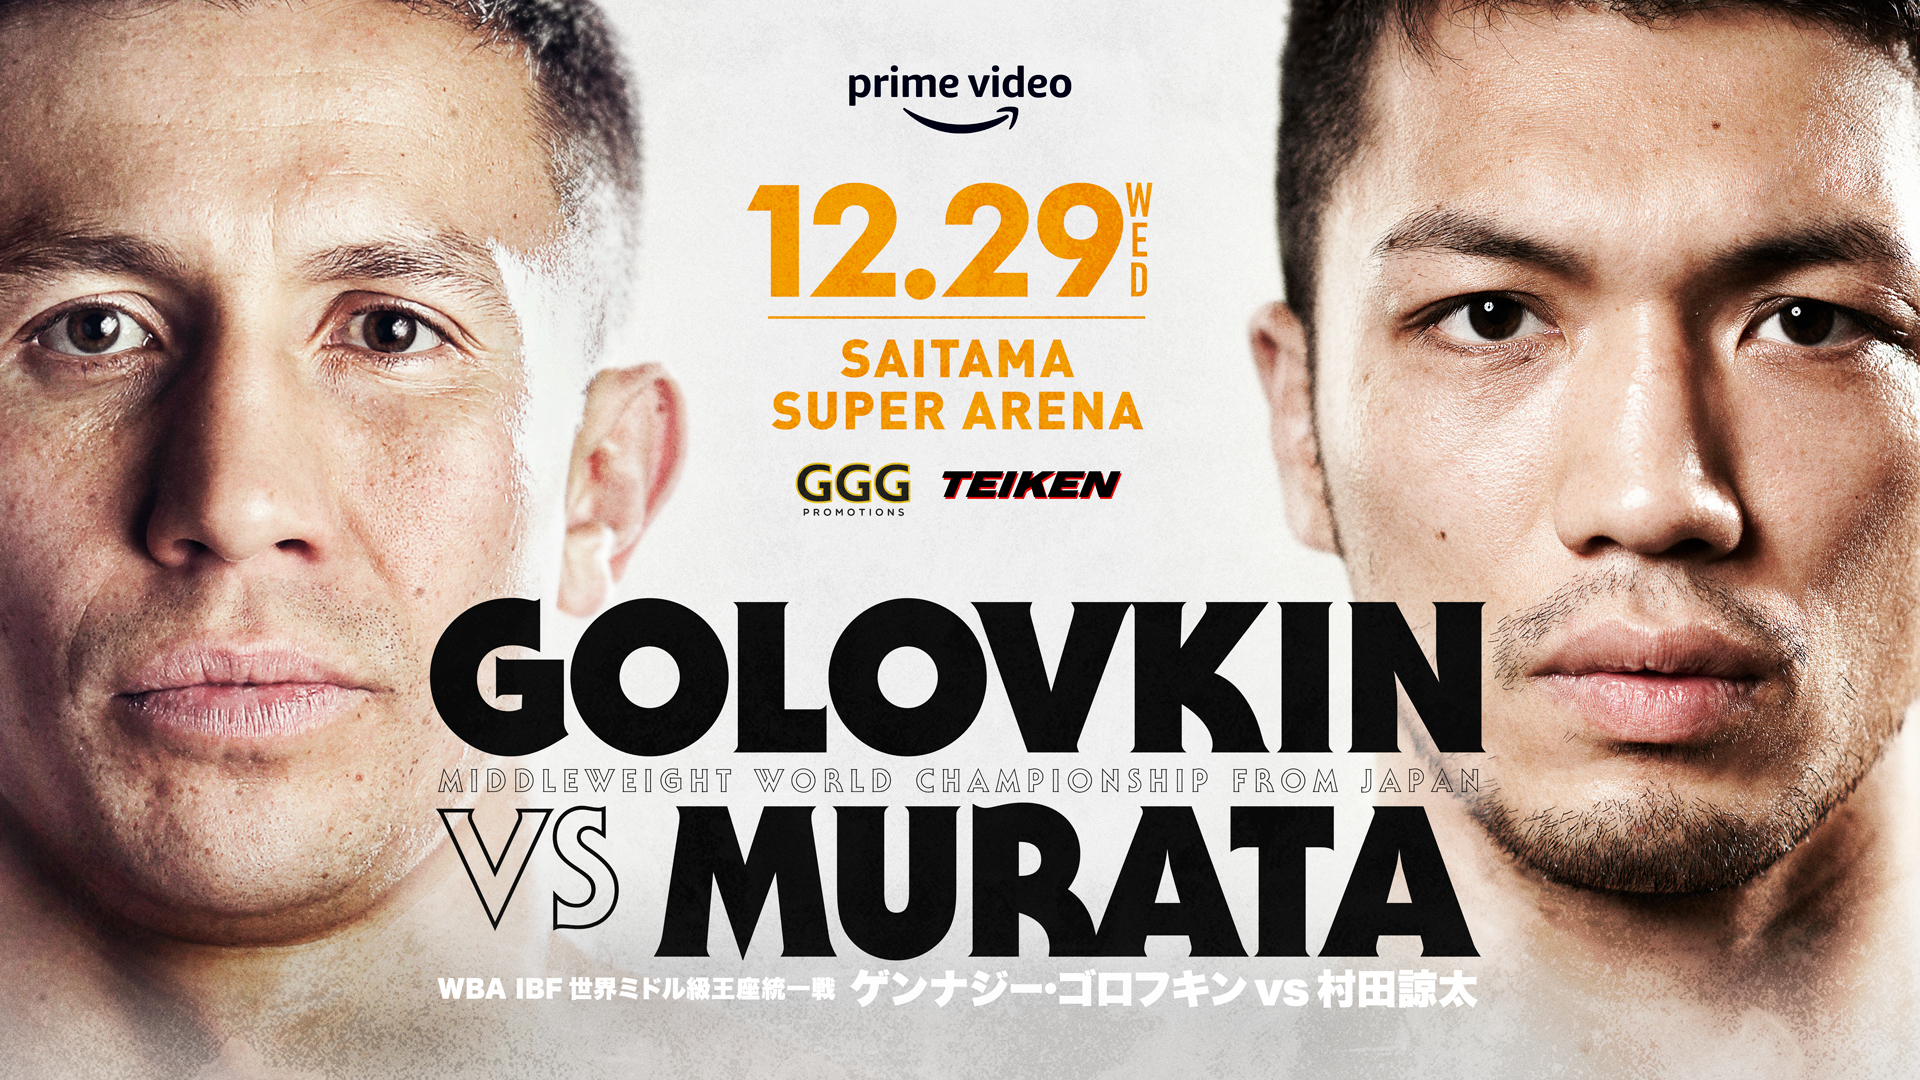 ゴロフキン 村田 なぜゴロフキンなのか 村田諒太が日本ボクシング史上最大のビッグマッチへ（木村悠）